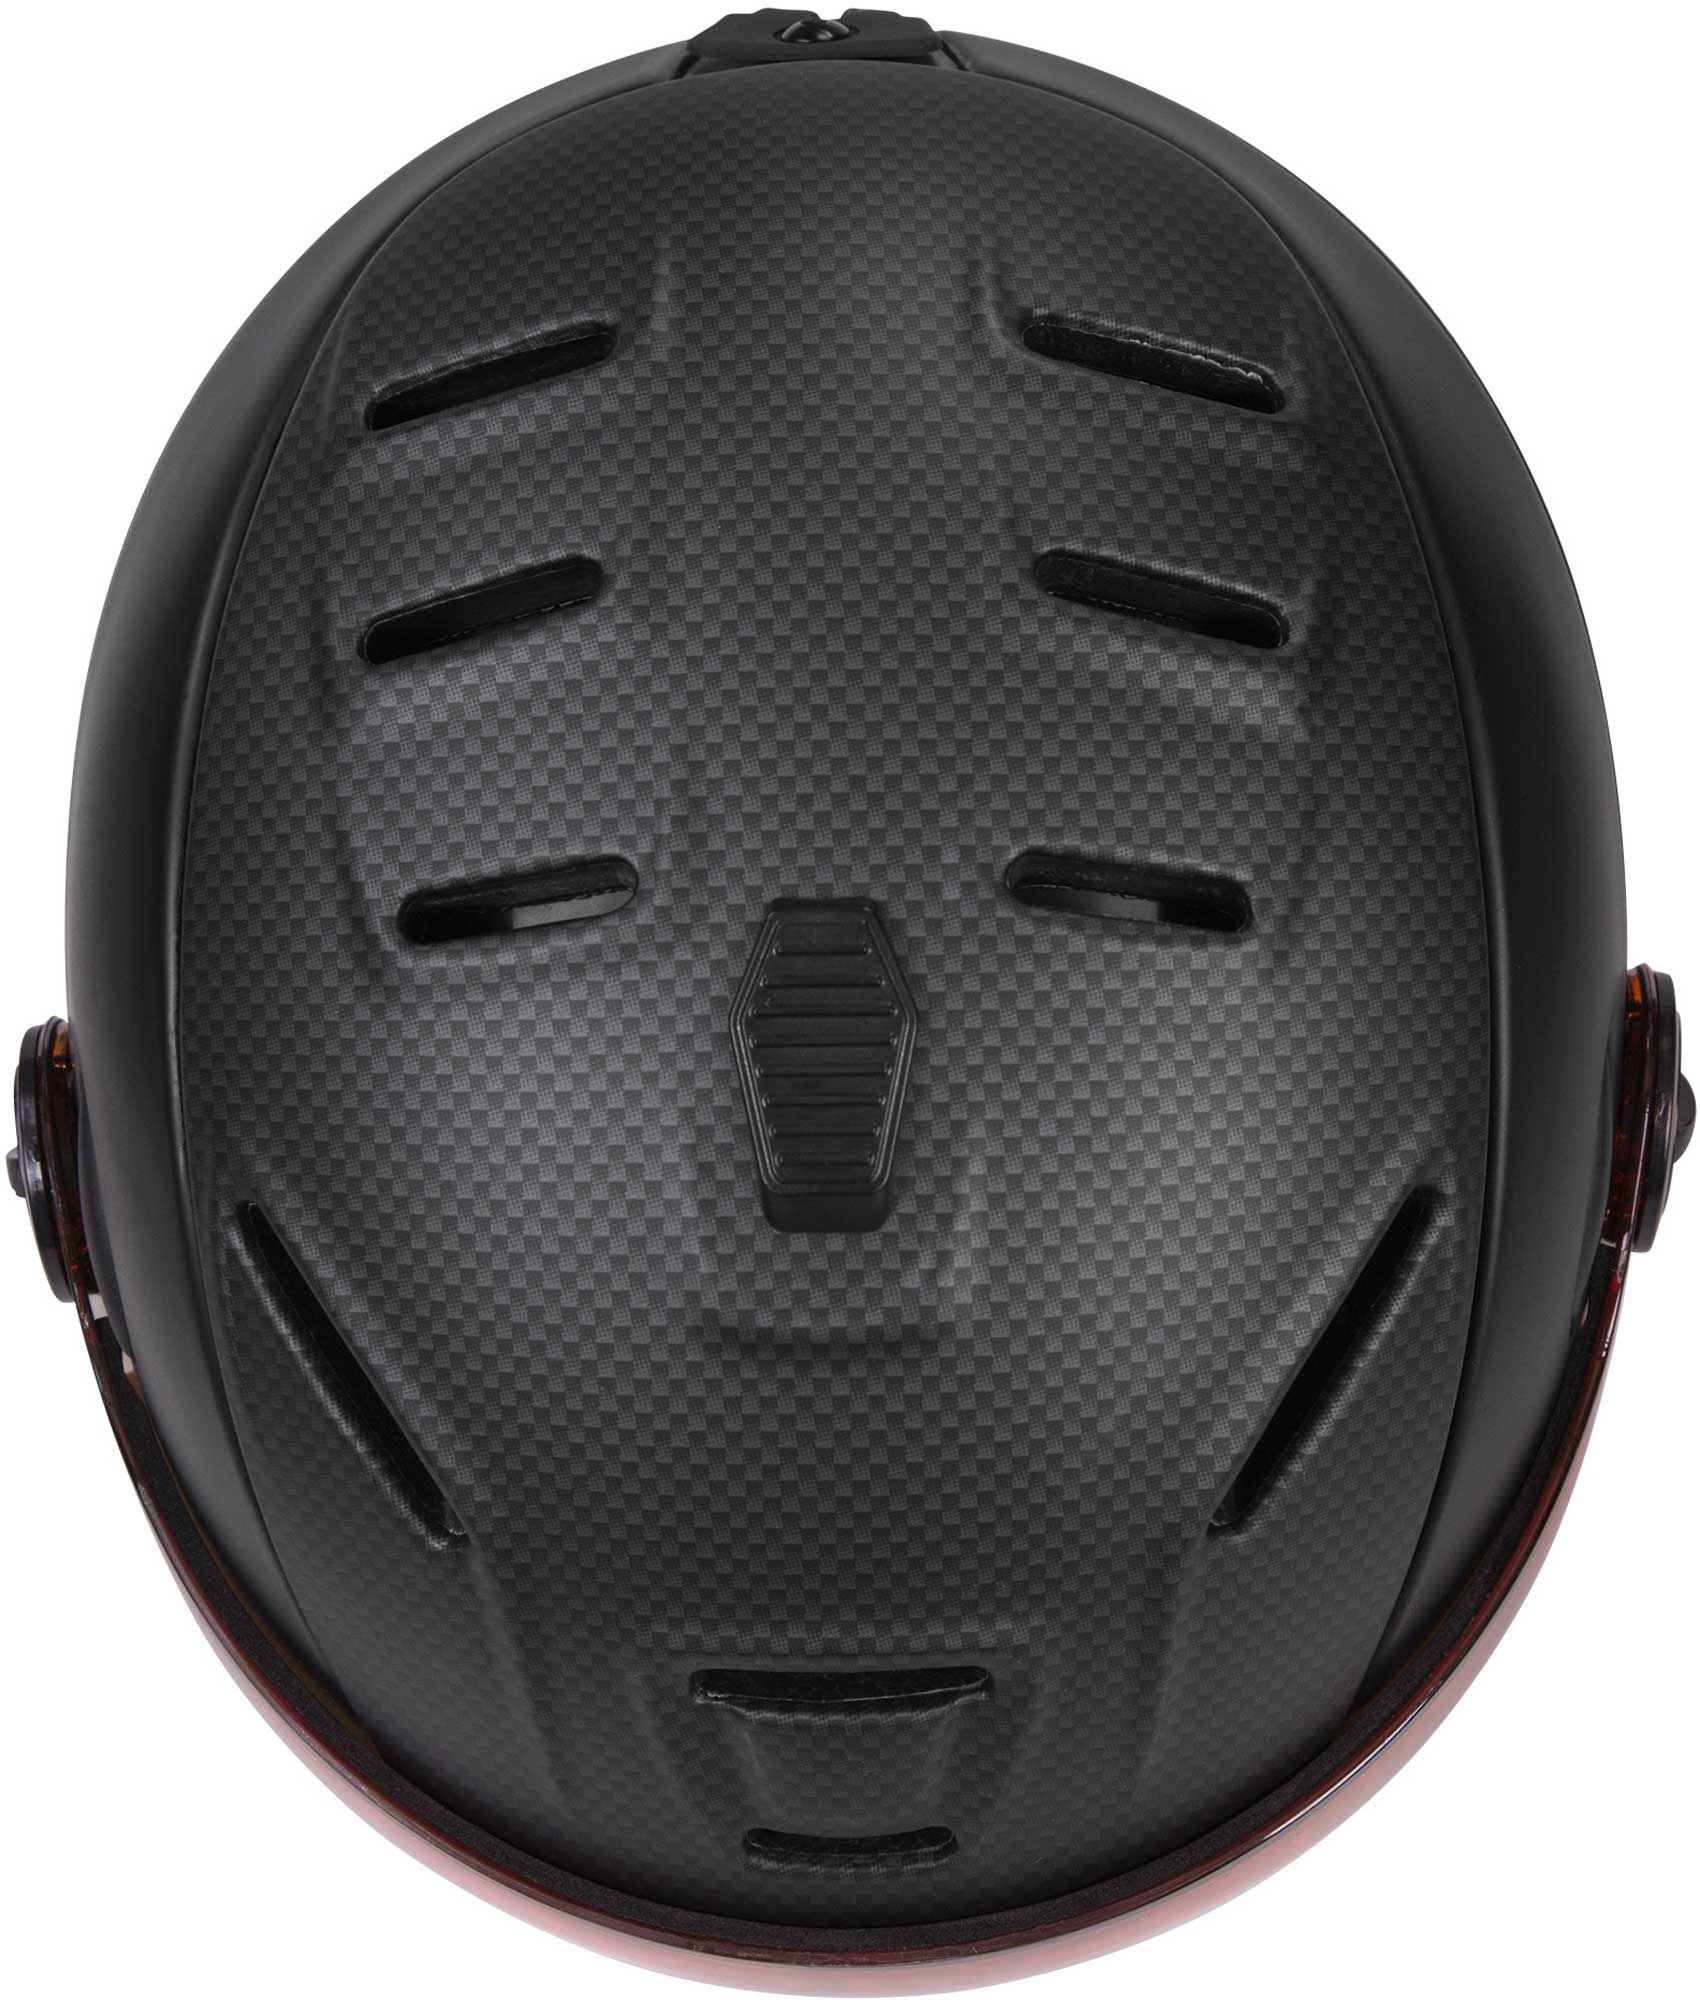 Unisex ski helmet with a visor